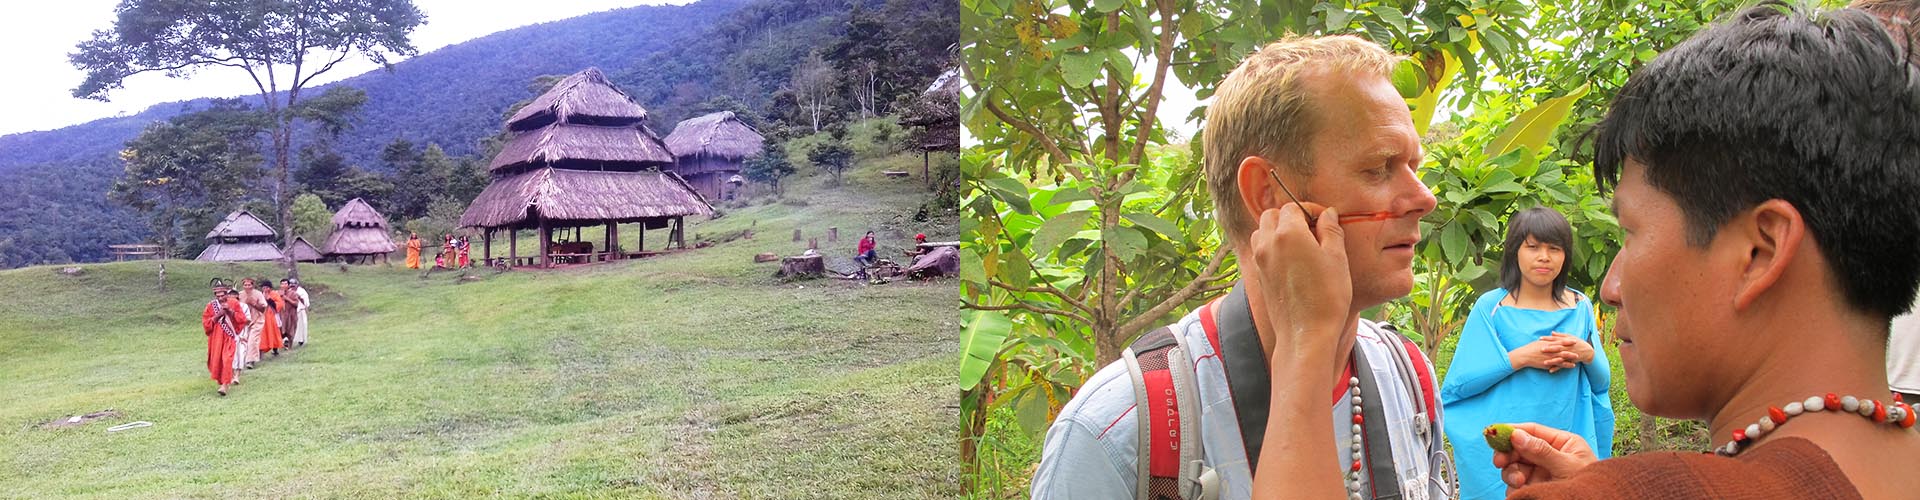 Opplev et bo- og levefellesskap med en liten stamme dypt inne i Amazonas høyjungel på deres premisser